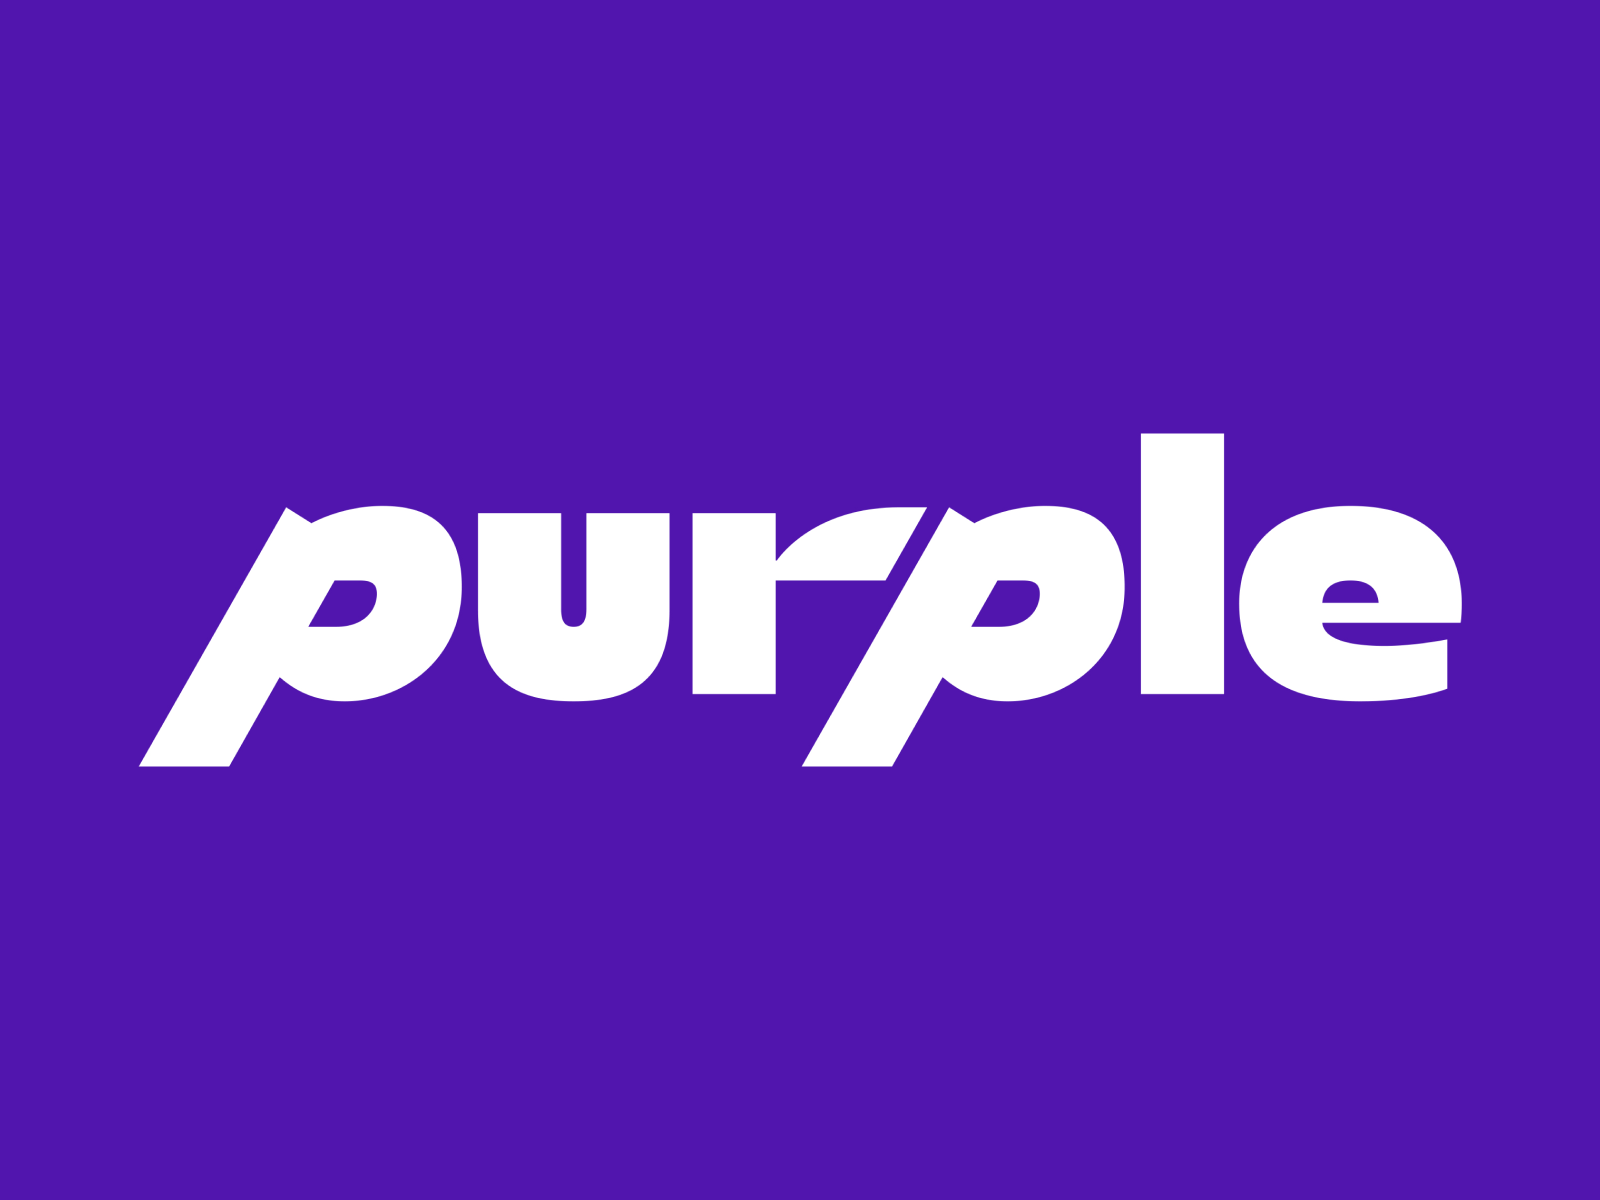 Purple Brand